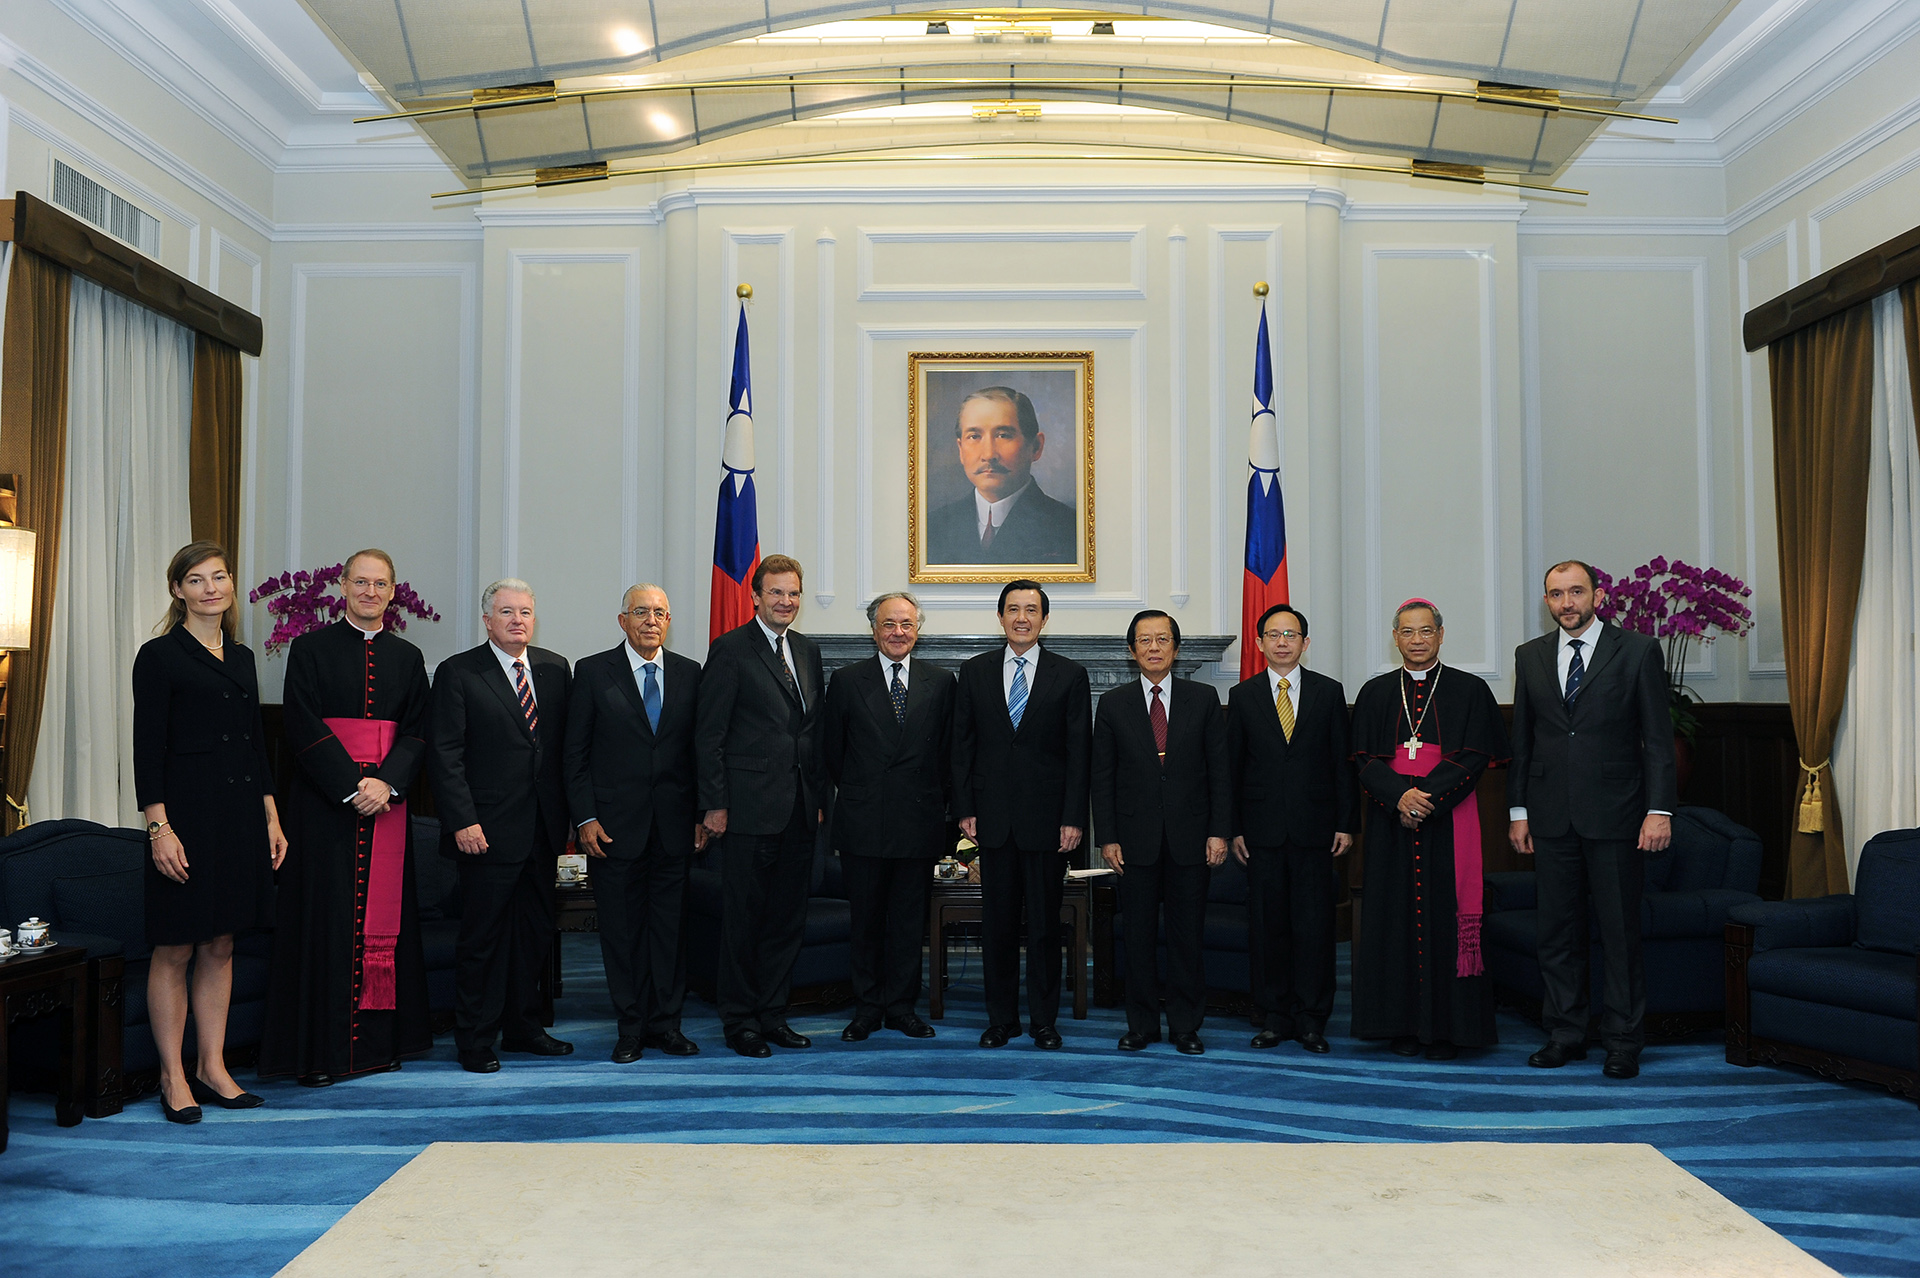 Jean-Pierre Mazery, Gran Canciller de la Soberana Orden de Malta, visita la República de China (Taiwán)